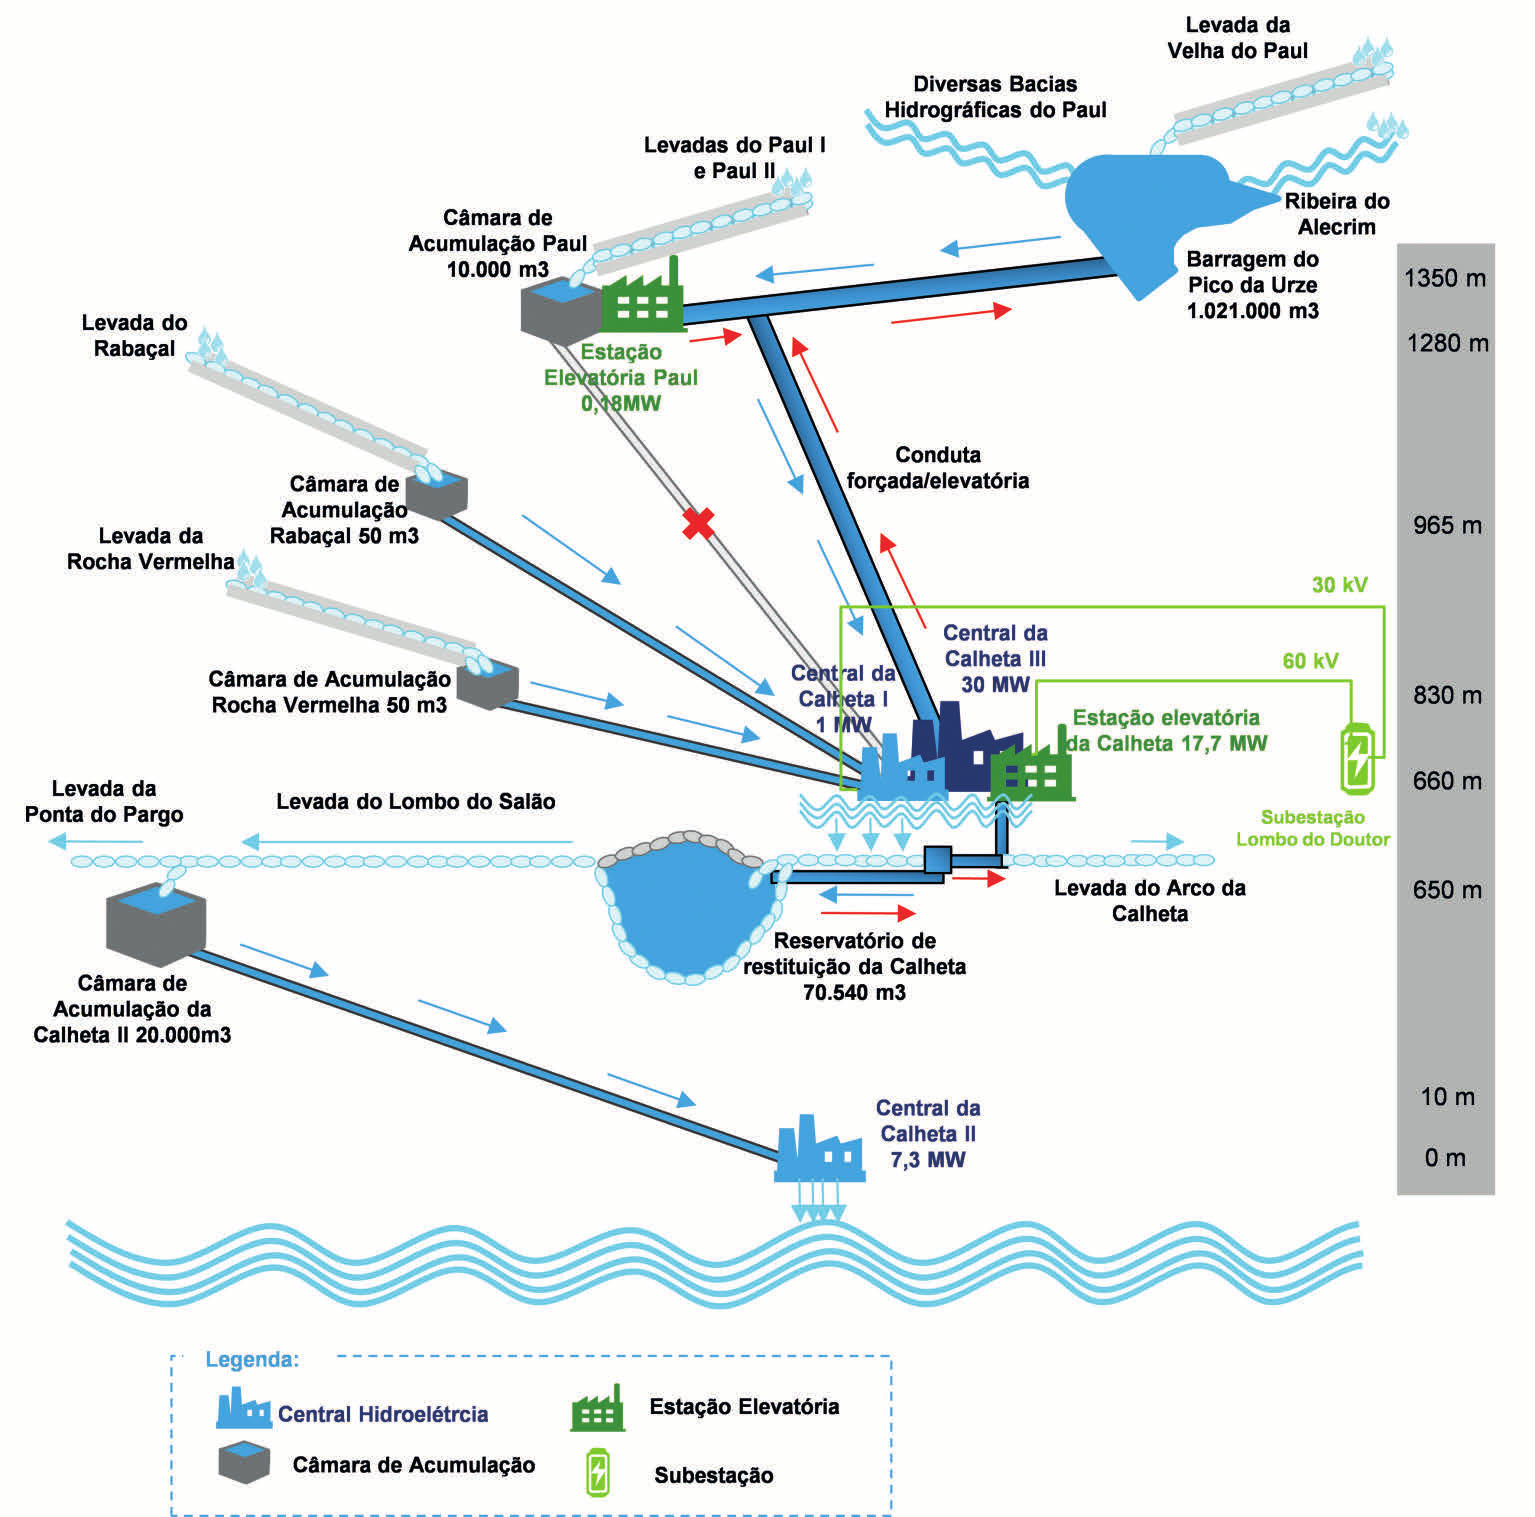 12 Situação futura (após ampliação) do aproveitamento hidroelétrico da Calheta Após a implementação do projeto, o Aproveitamento